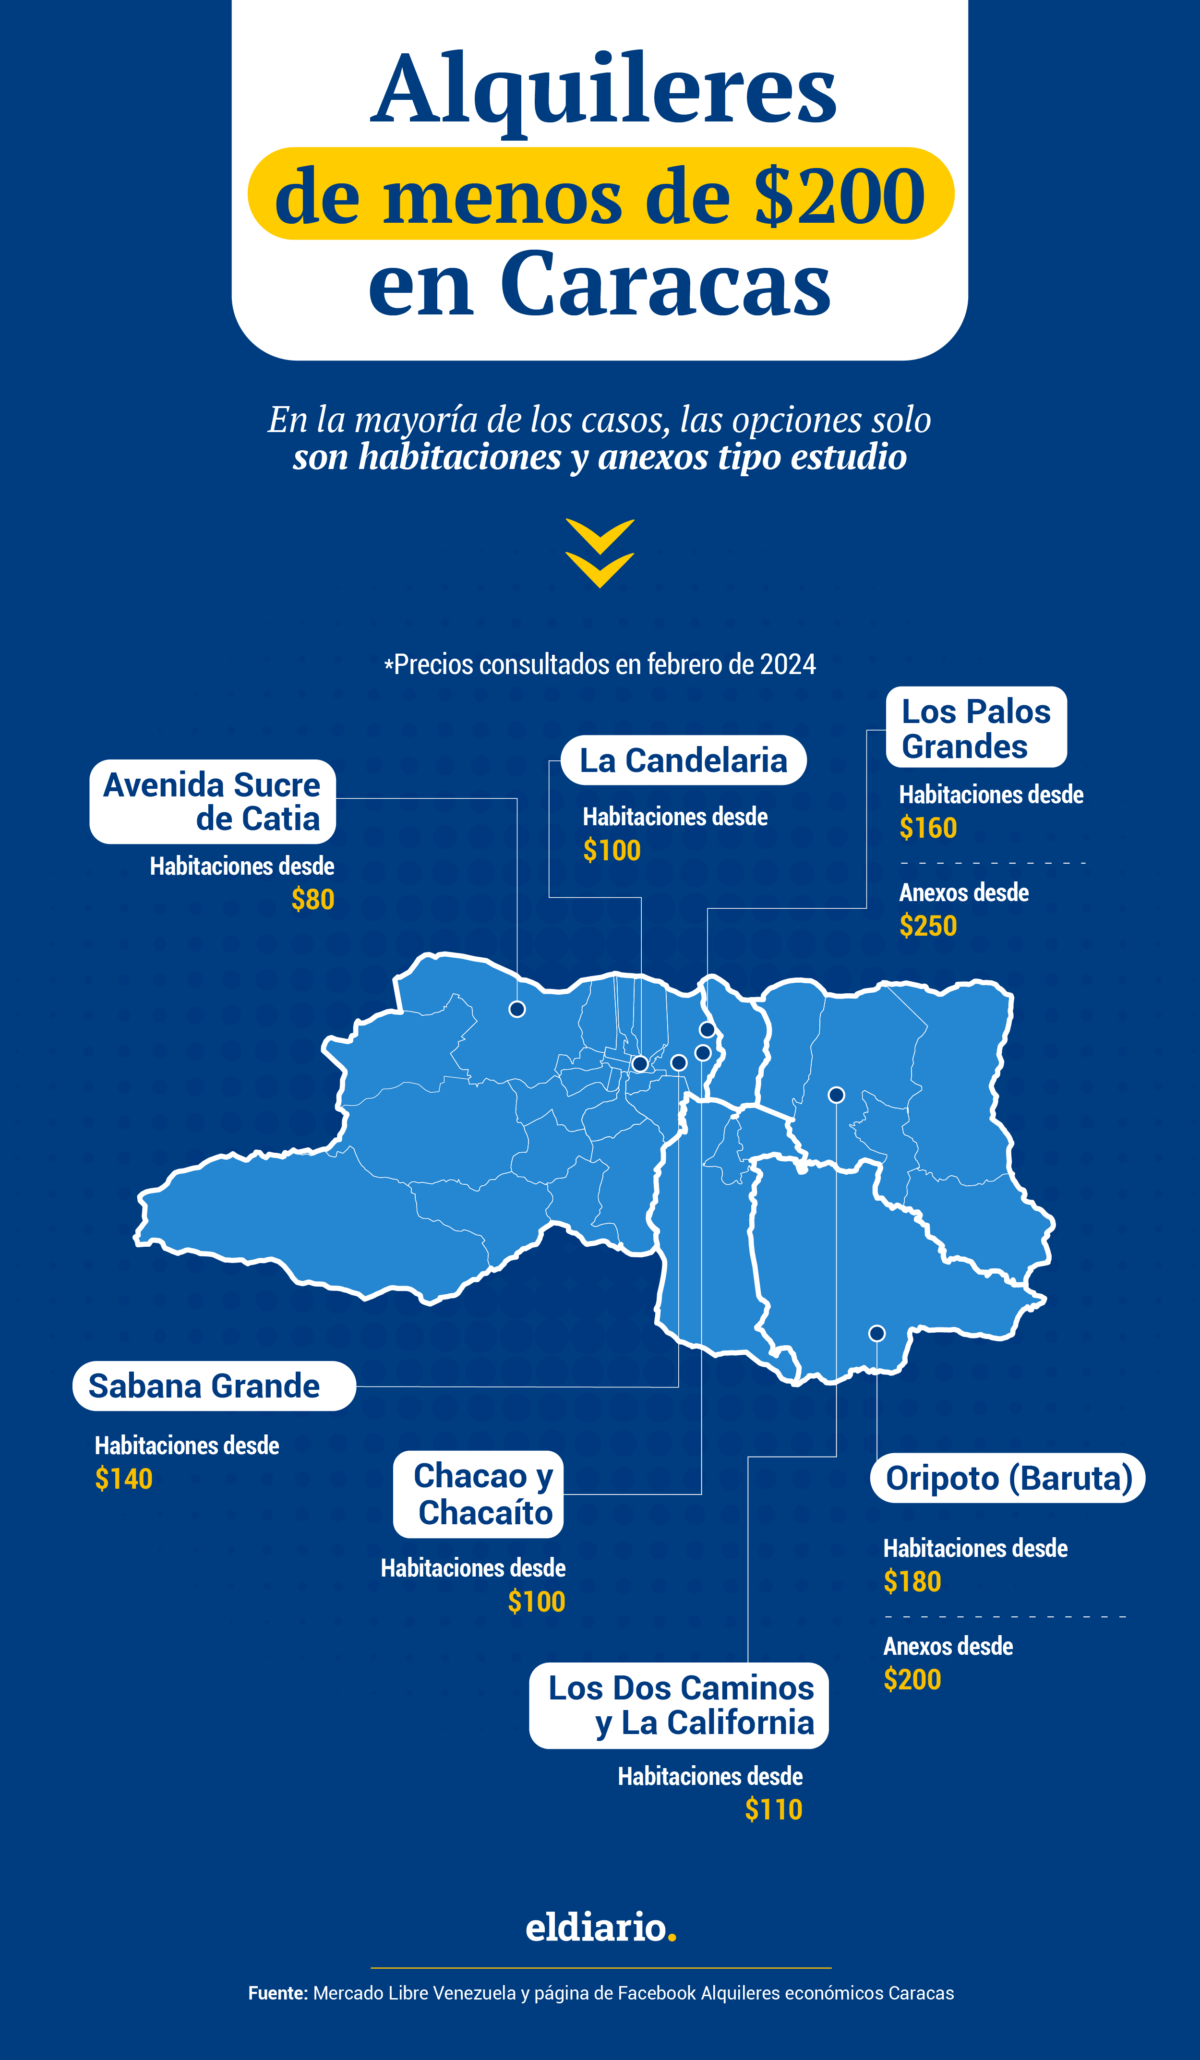 Alquileres en Caracas: ¿en qué zonas se encuentran las opciones más económicas?